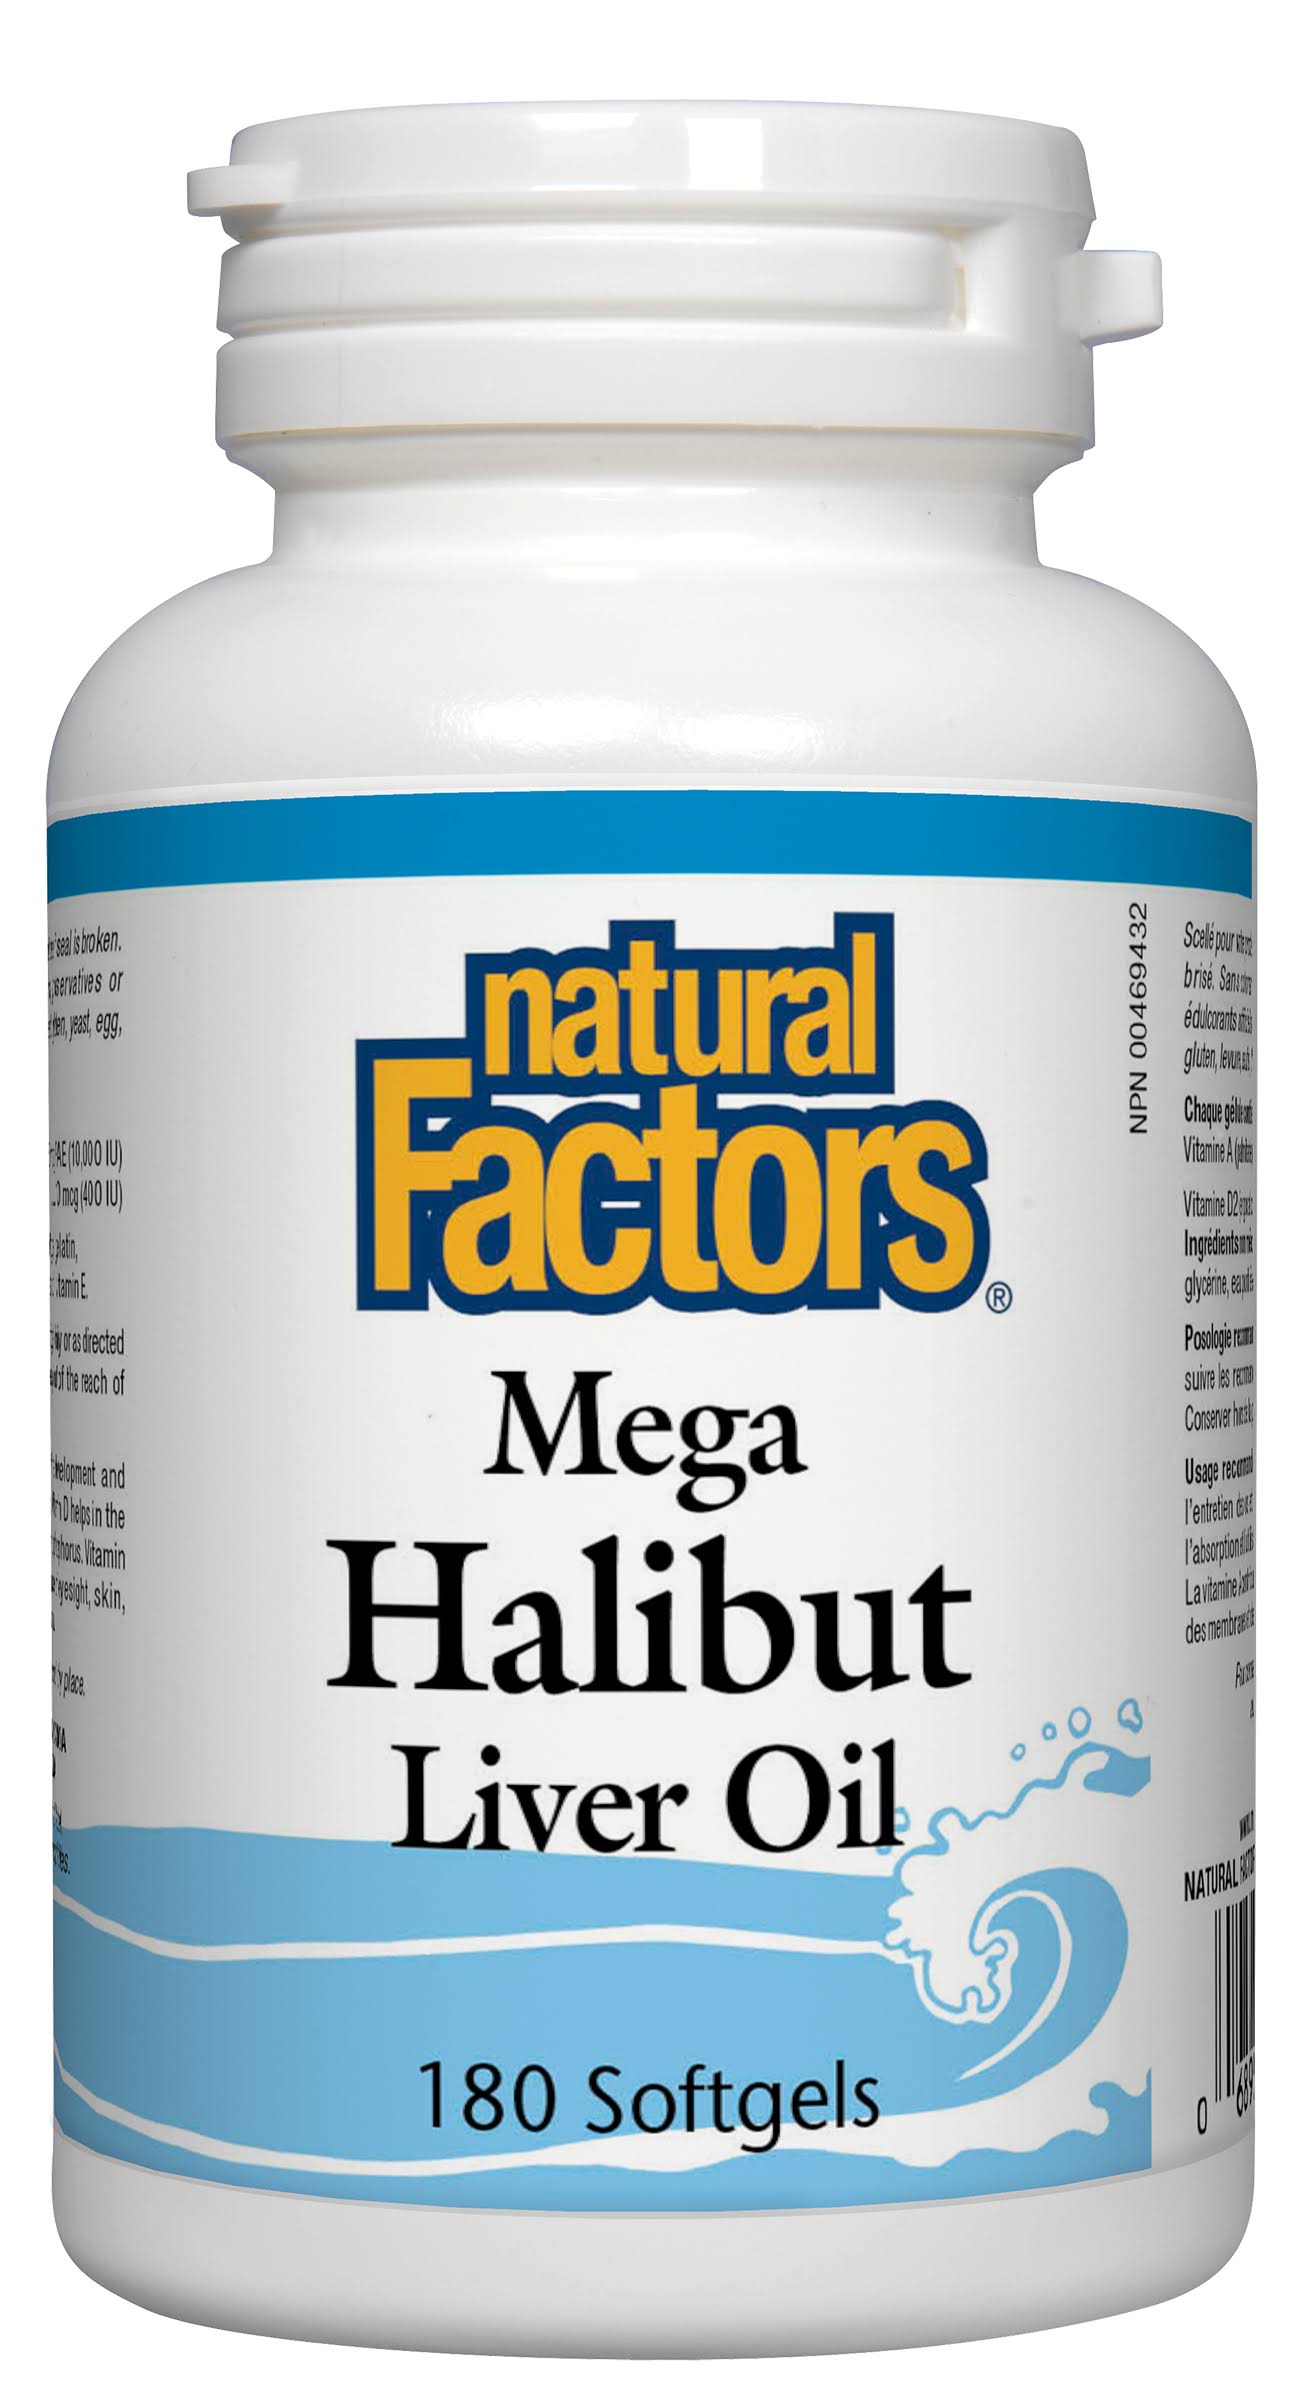 Natural Factors - Mega Halibut Liver Oil 180 Softgels